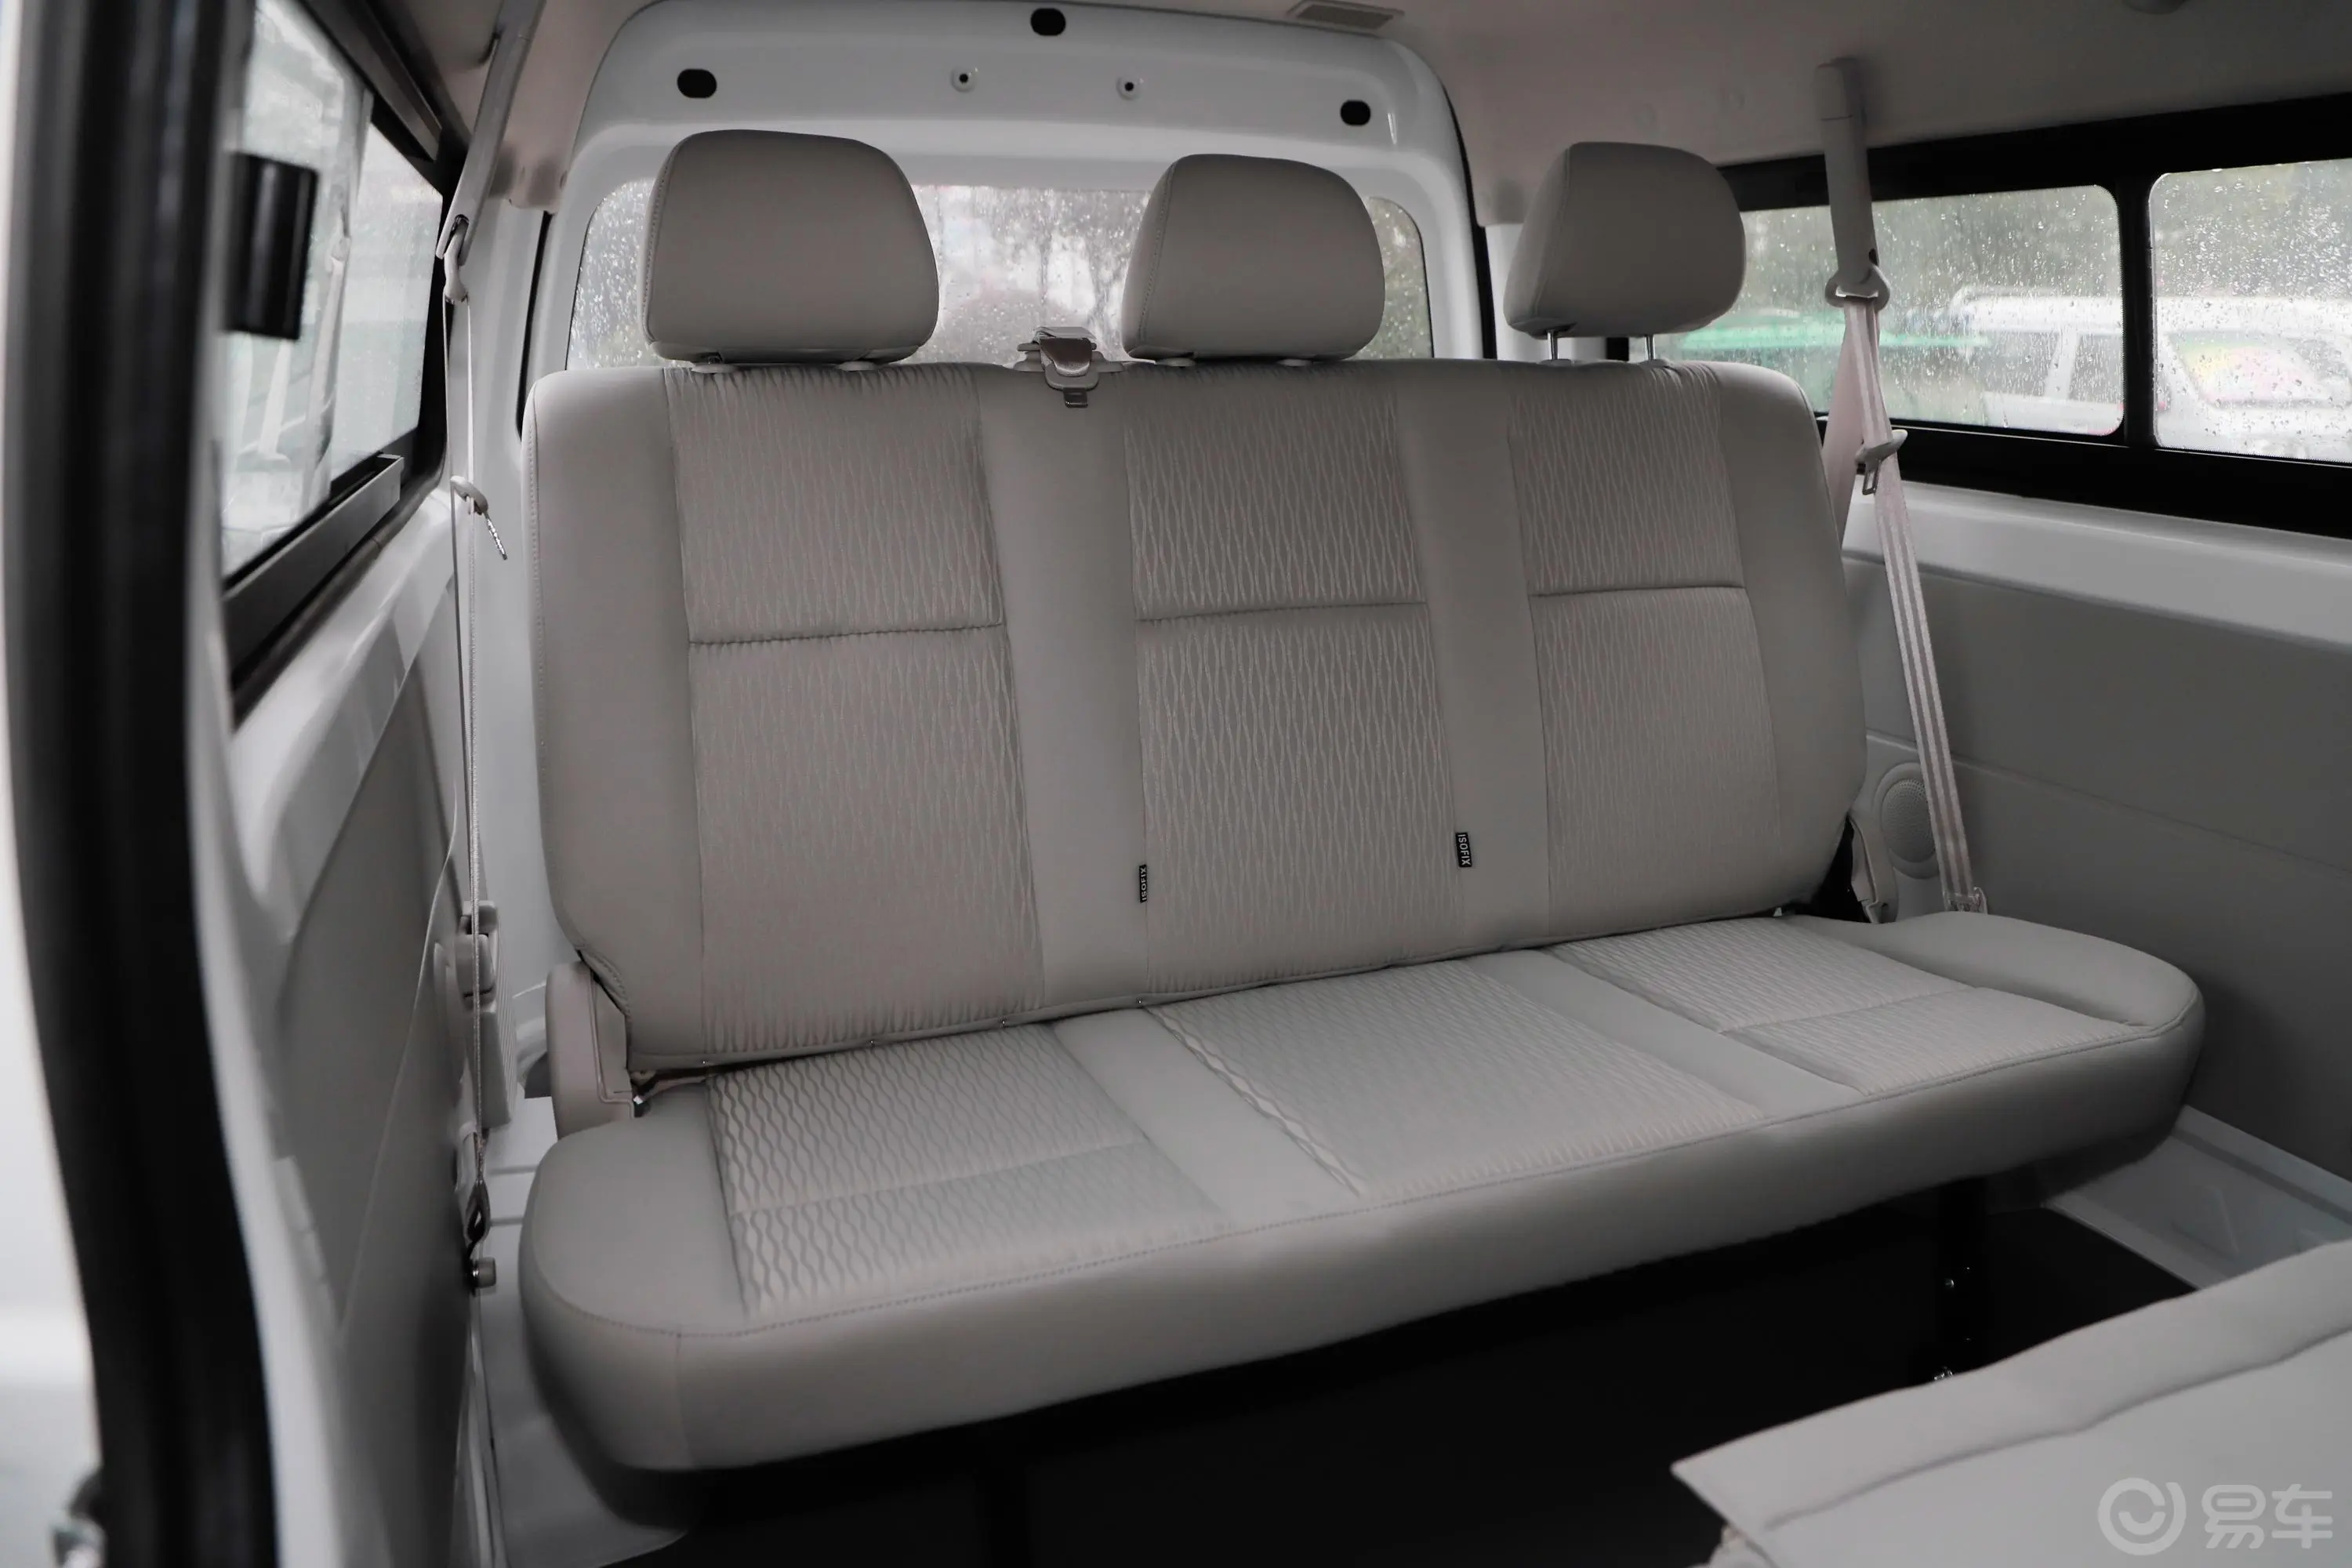 新海狮S客车 1.5L 手动 财富版 国V第三排座椅